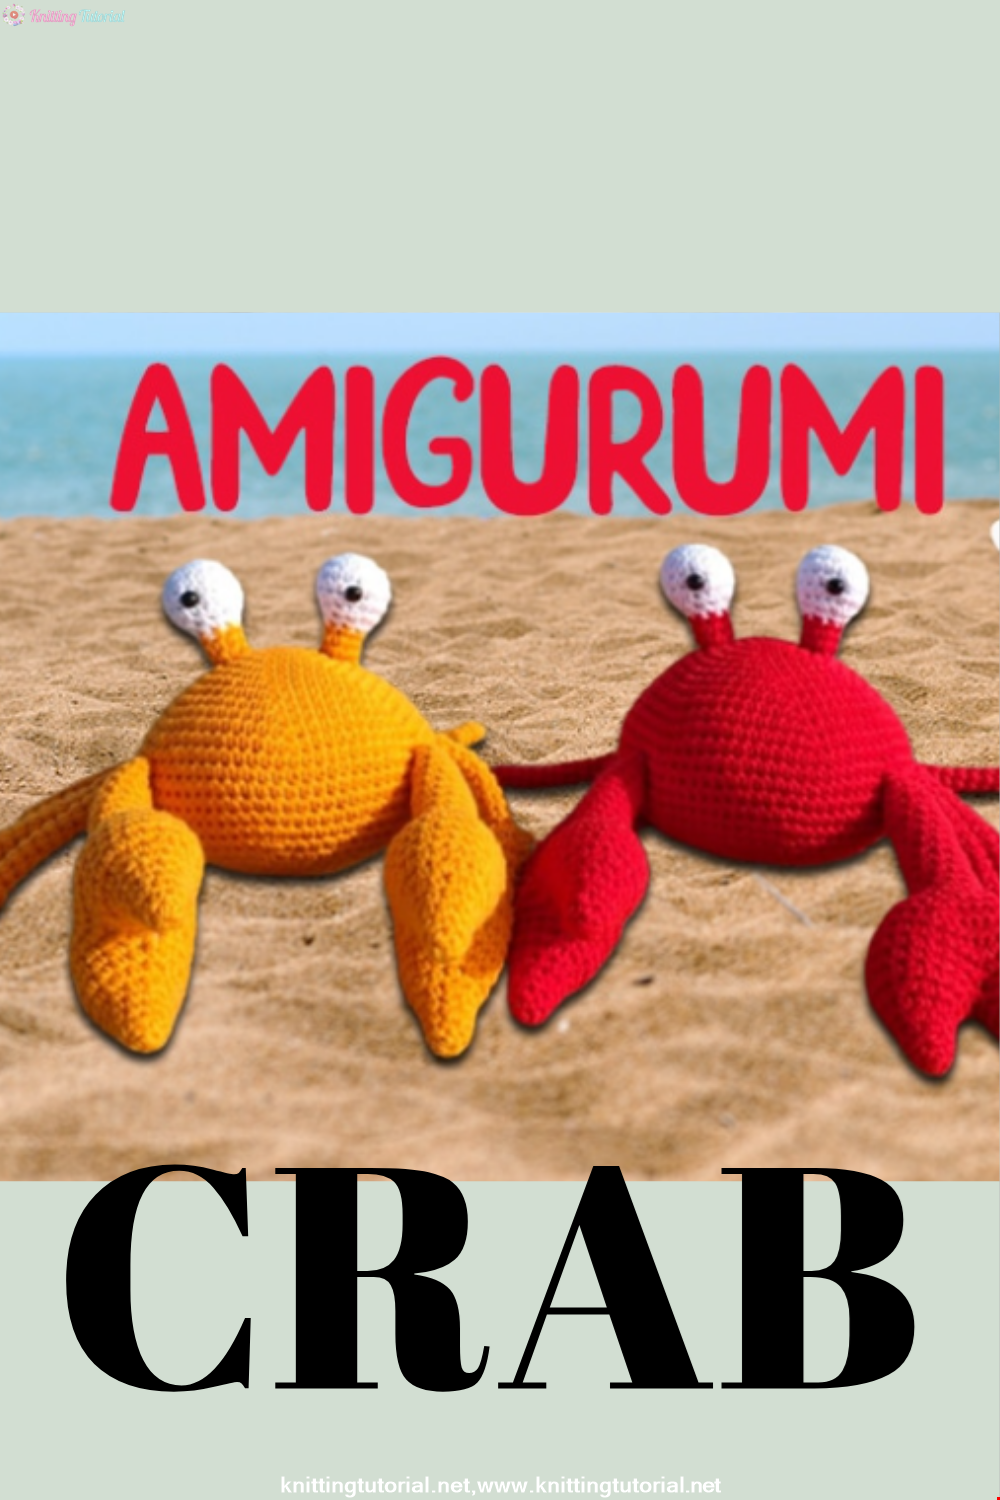 Amigurumi Crab Recipe and Easy Preparation